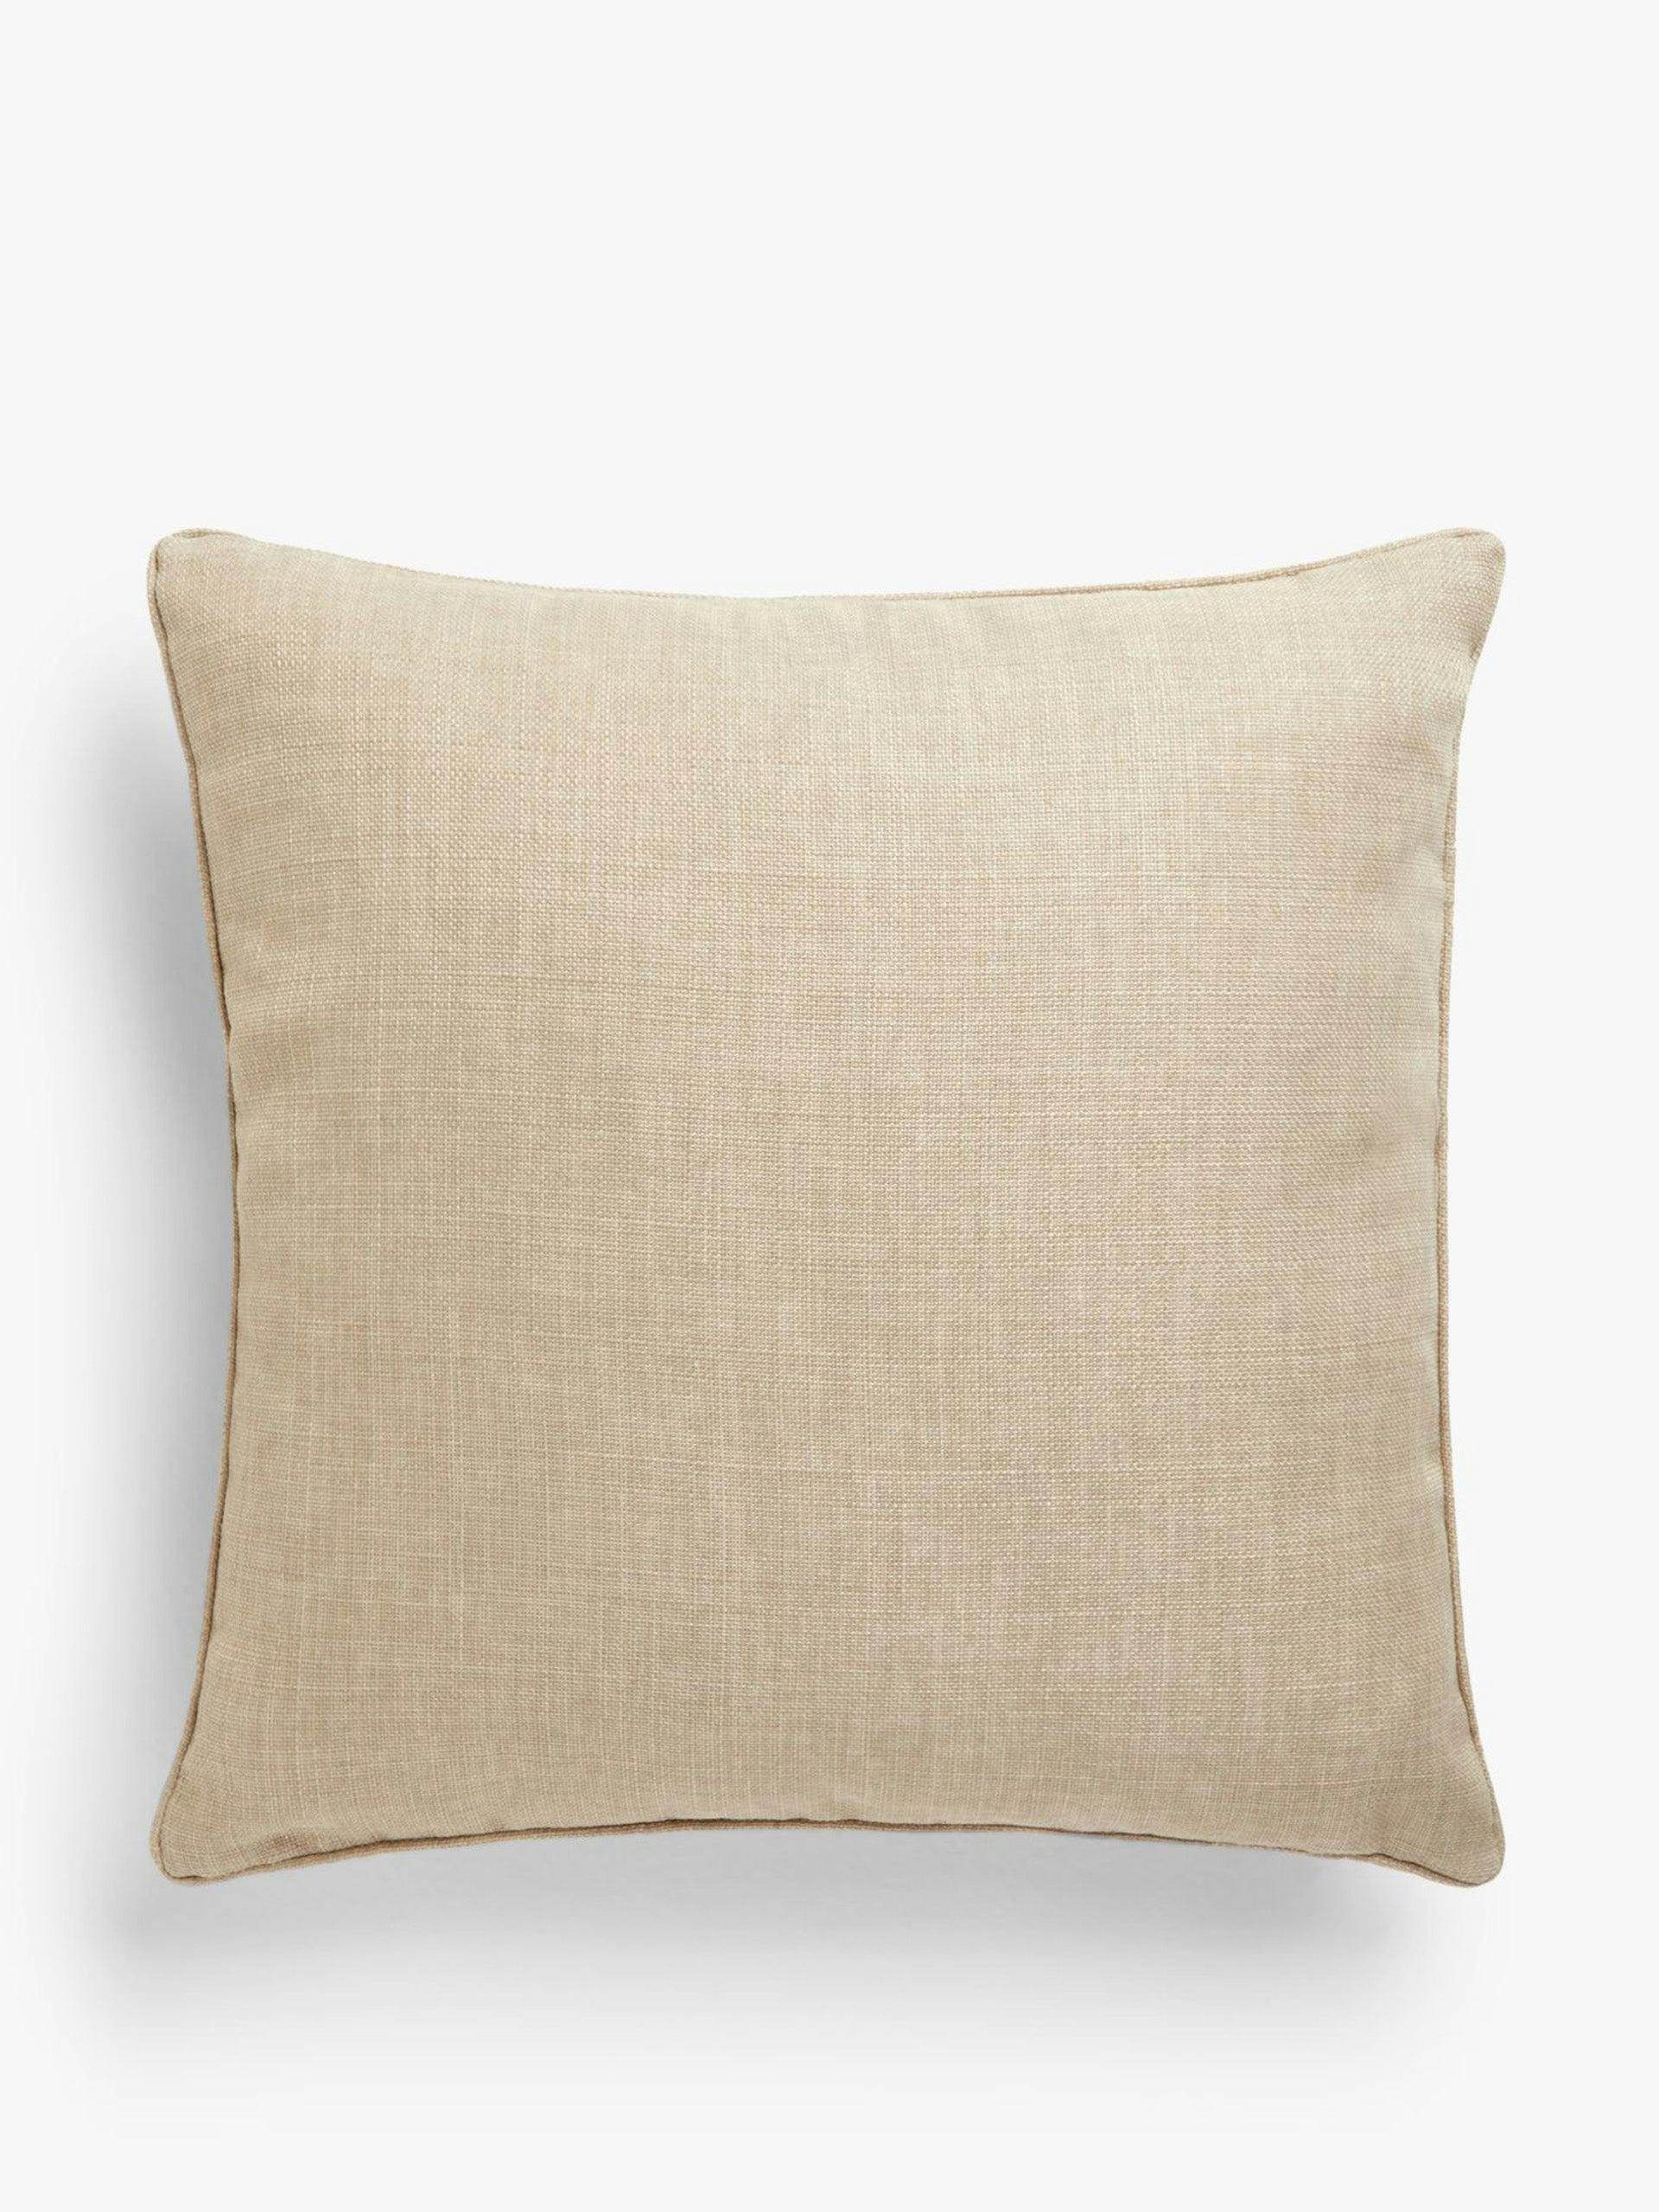 Beige textured weave cushion